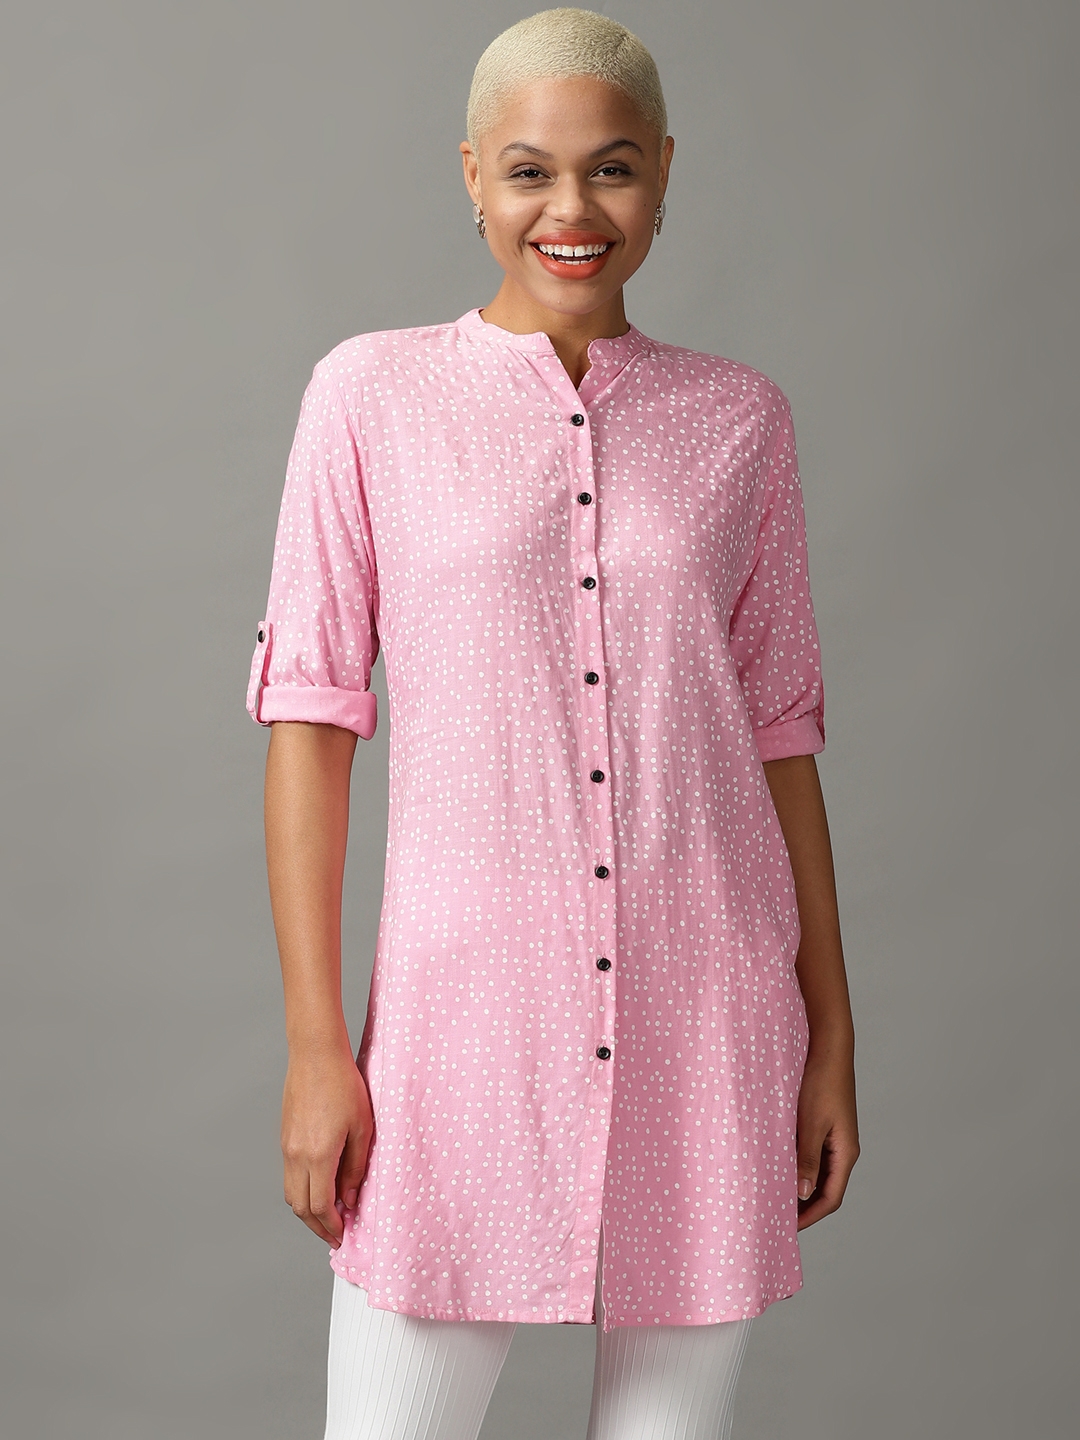 Women's Pink Viscose Rayon Printed Casual Shirts